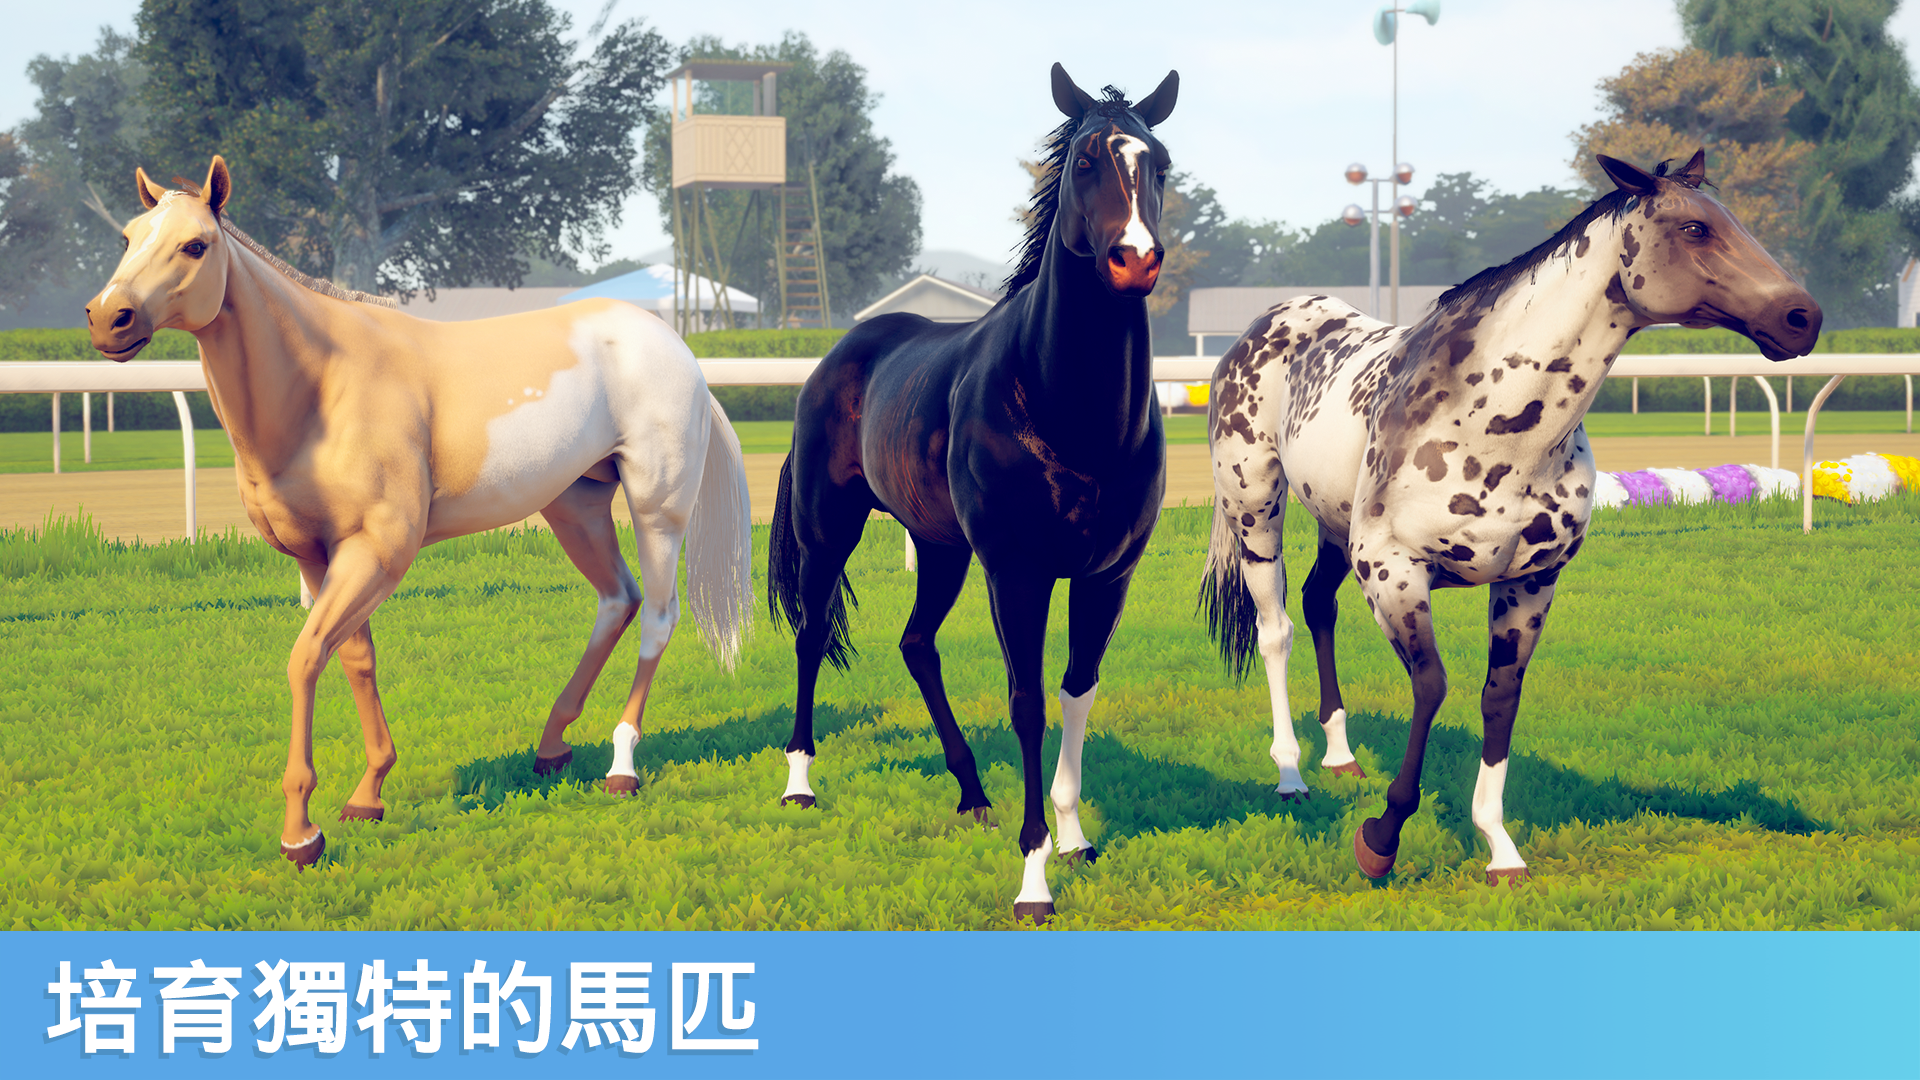 Screenshot 1 of 家族傳奇： 馬匹養成競技 1.43.1